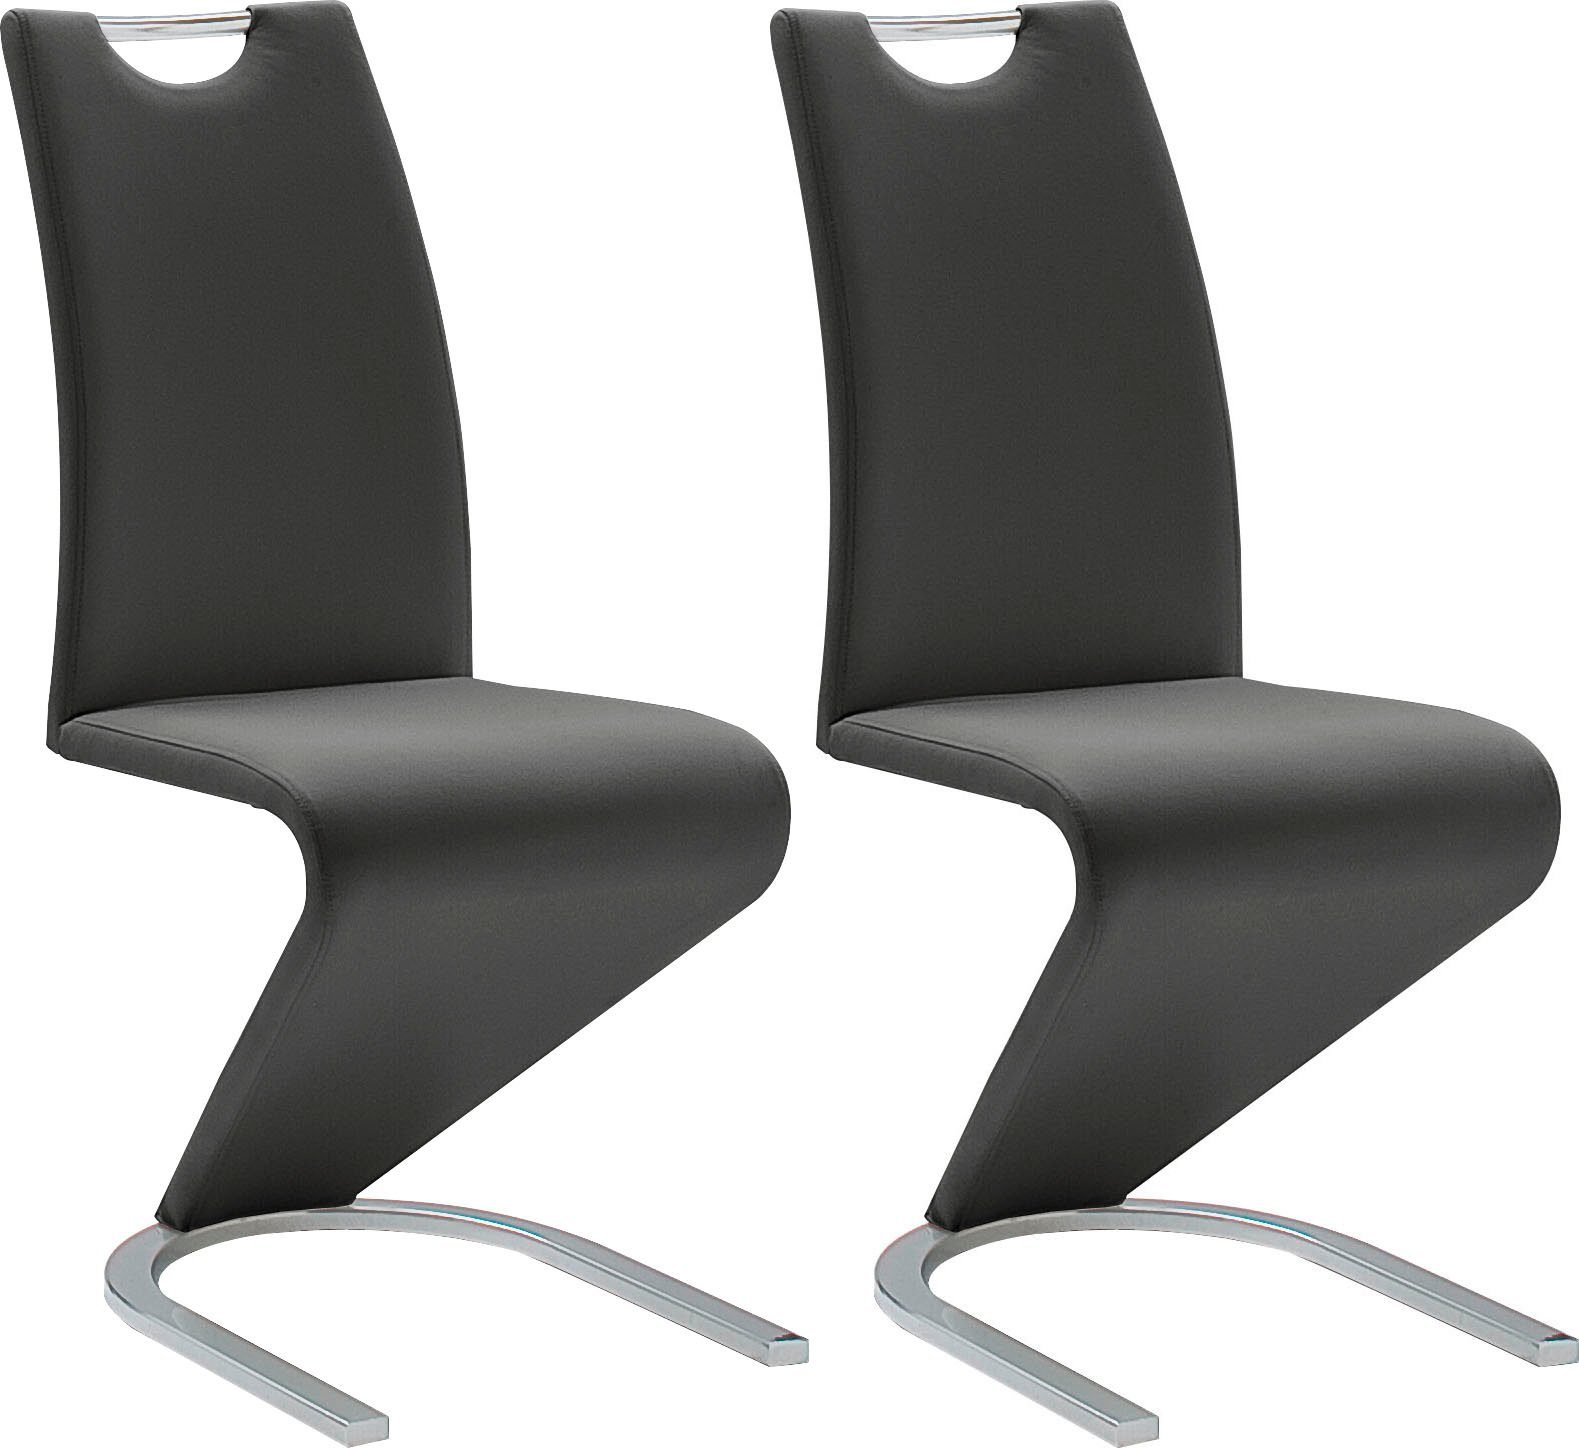 MCA furniture Vrijdragende stoel Amado set van 2, 4 en 6 stuks, stoel belastbaar tot 120 kg (set)